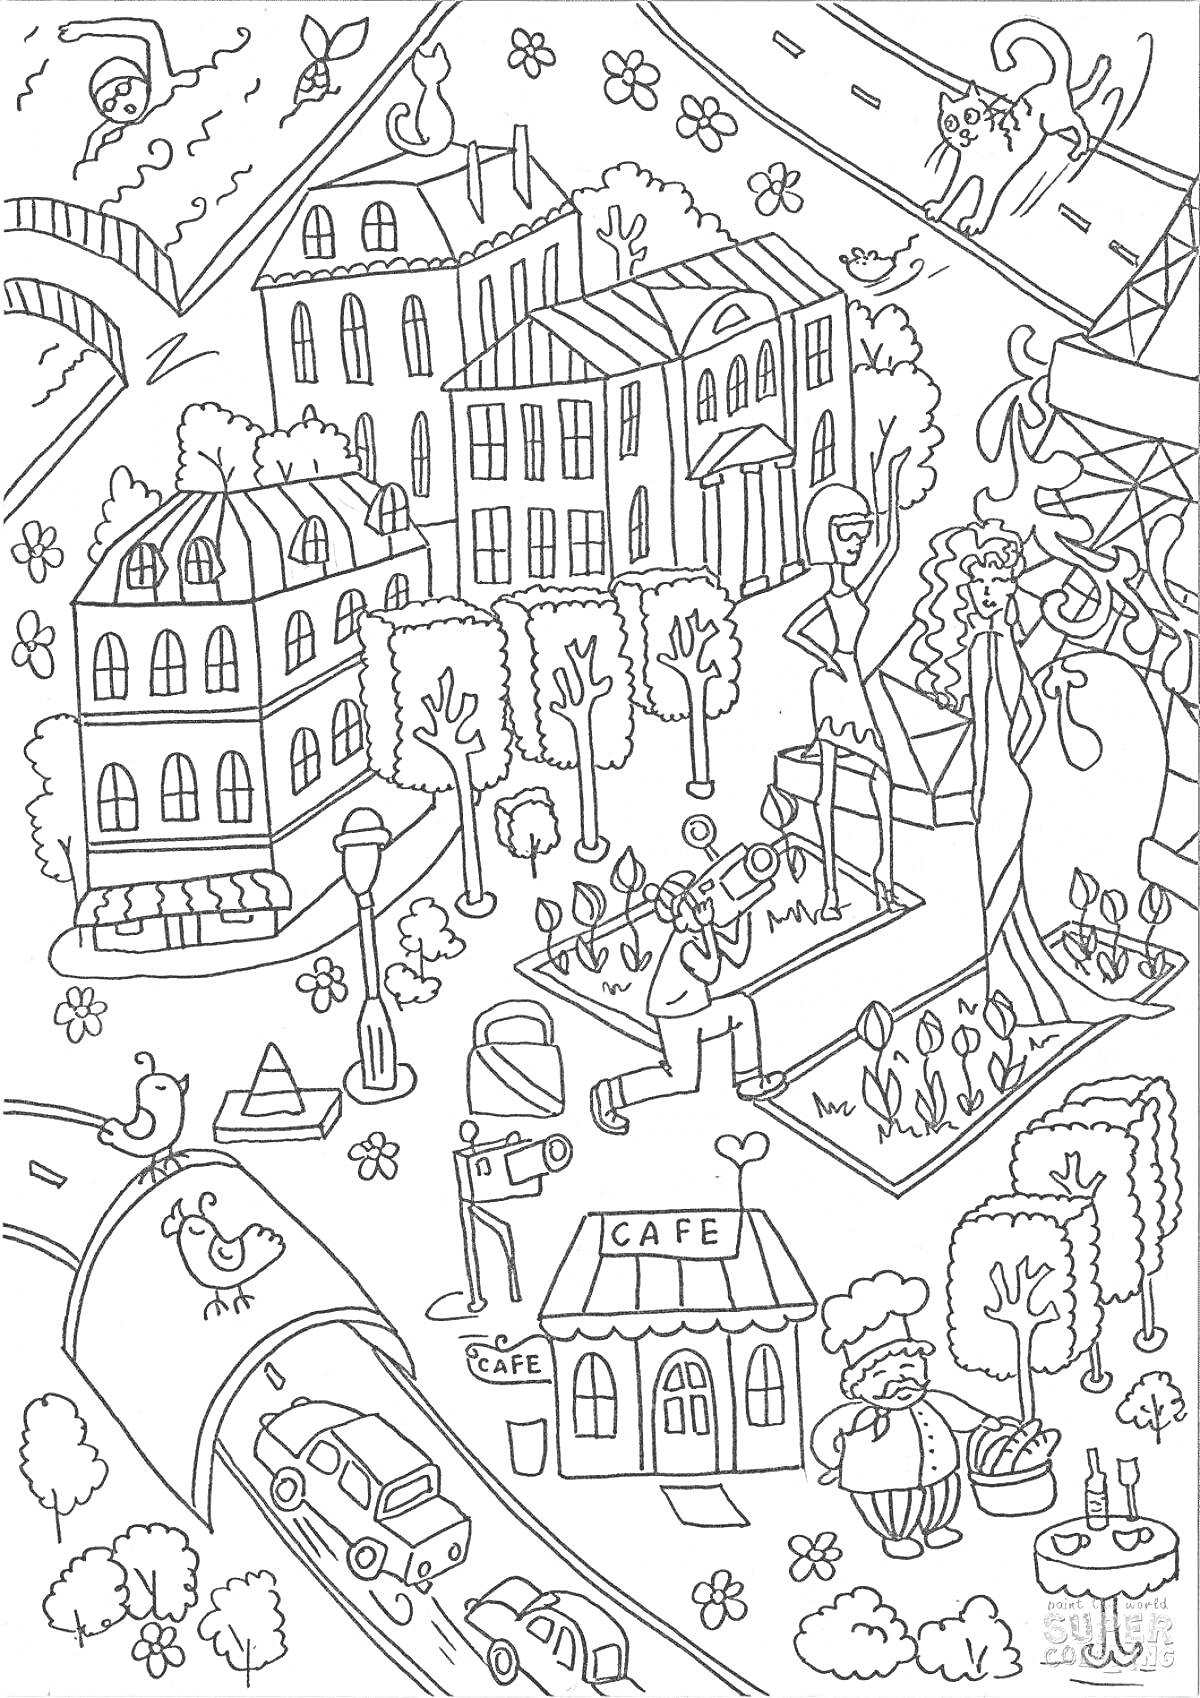 На раскраске изображено: Здания, Машины, Кафе, Деревья, Мост, Статуя, Цветы, Птица, Животные, Человек, Кот, Улицы